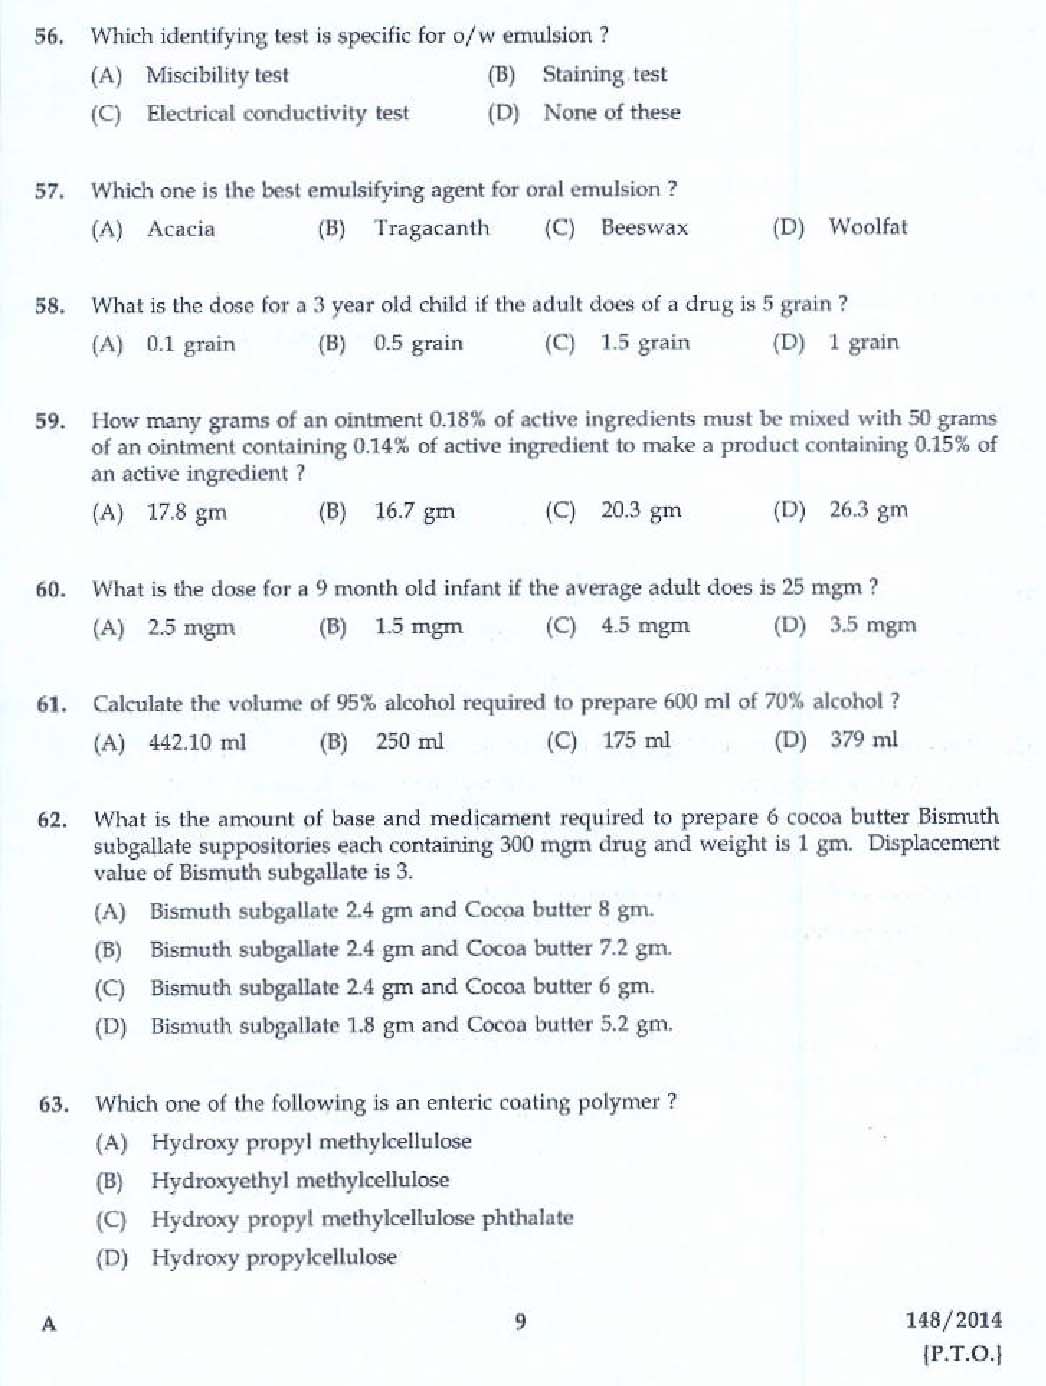 KPSC Pharmacist Grade II Health Services Exam 2014 Code 1482014 7